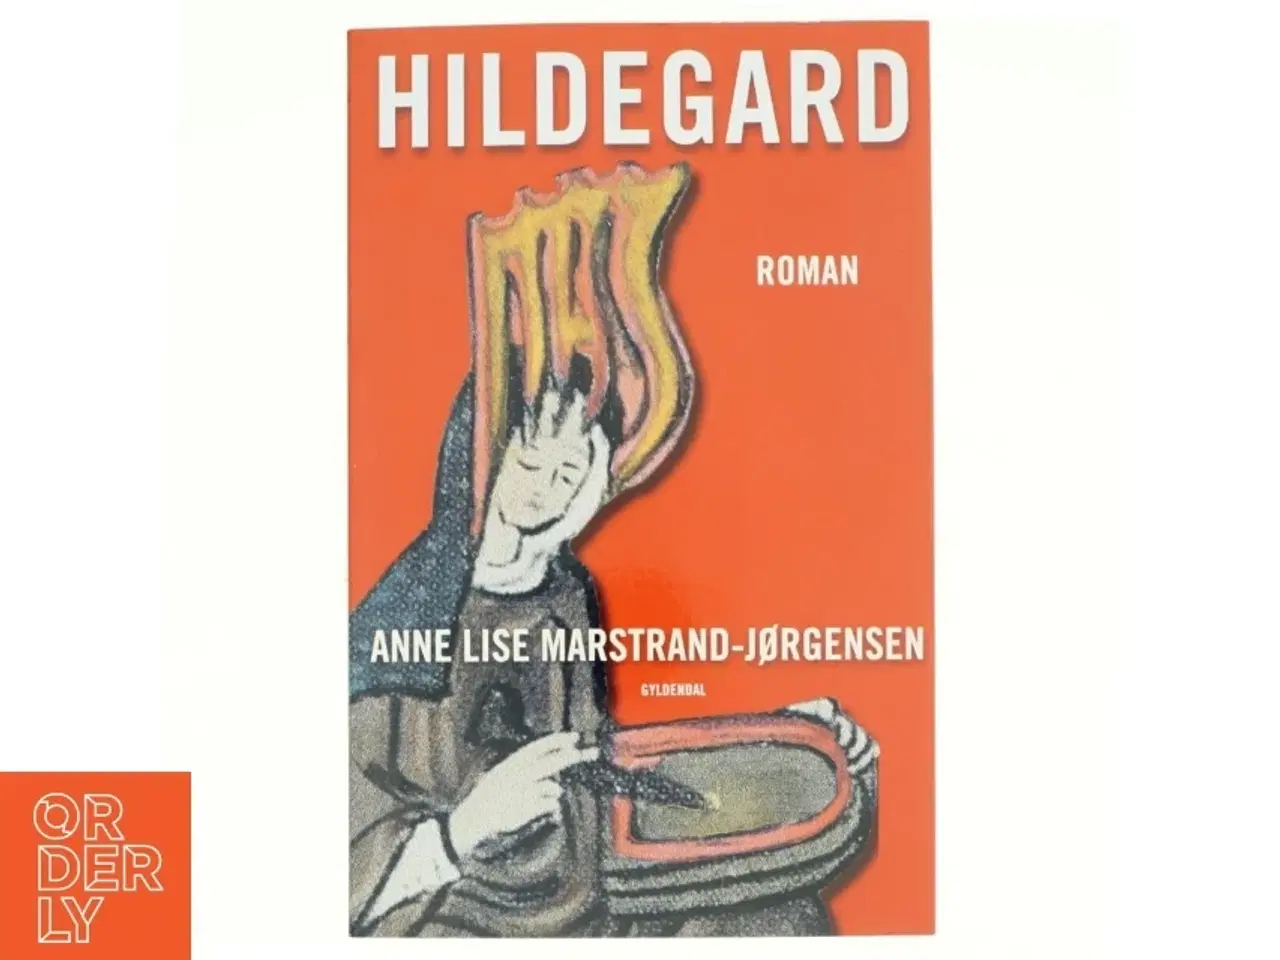 Billede 1 - Hildegard af Anne Lise Marstrand-Jørgensen (Bog)